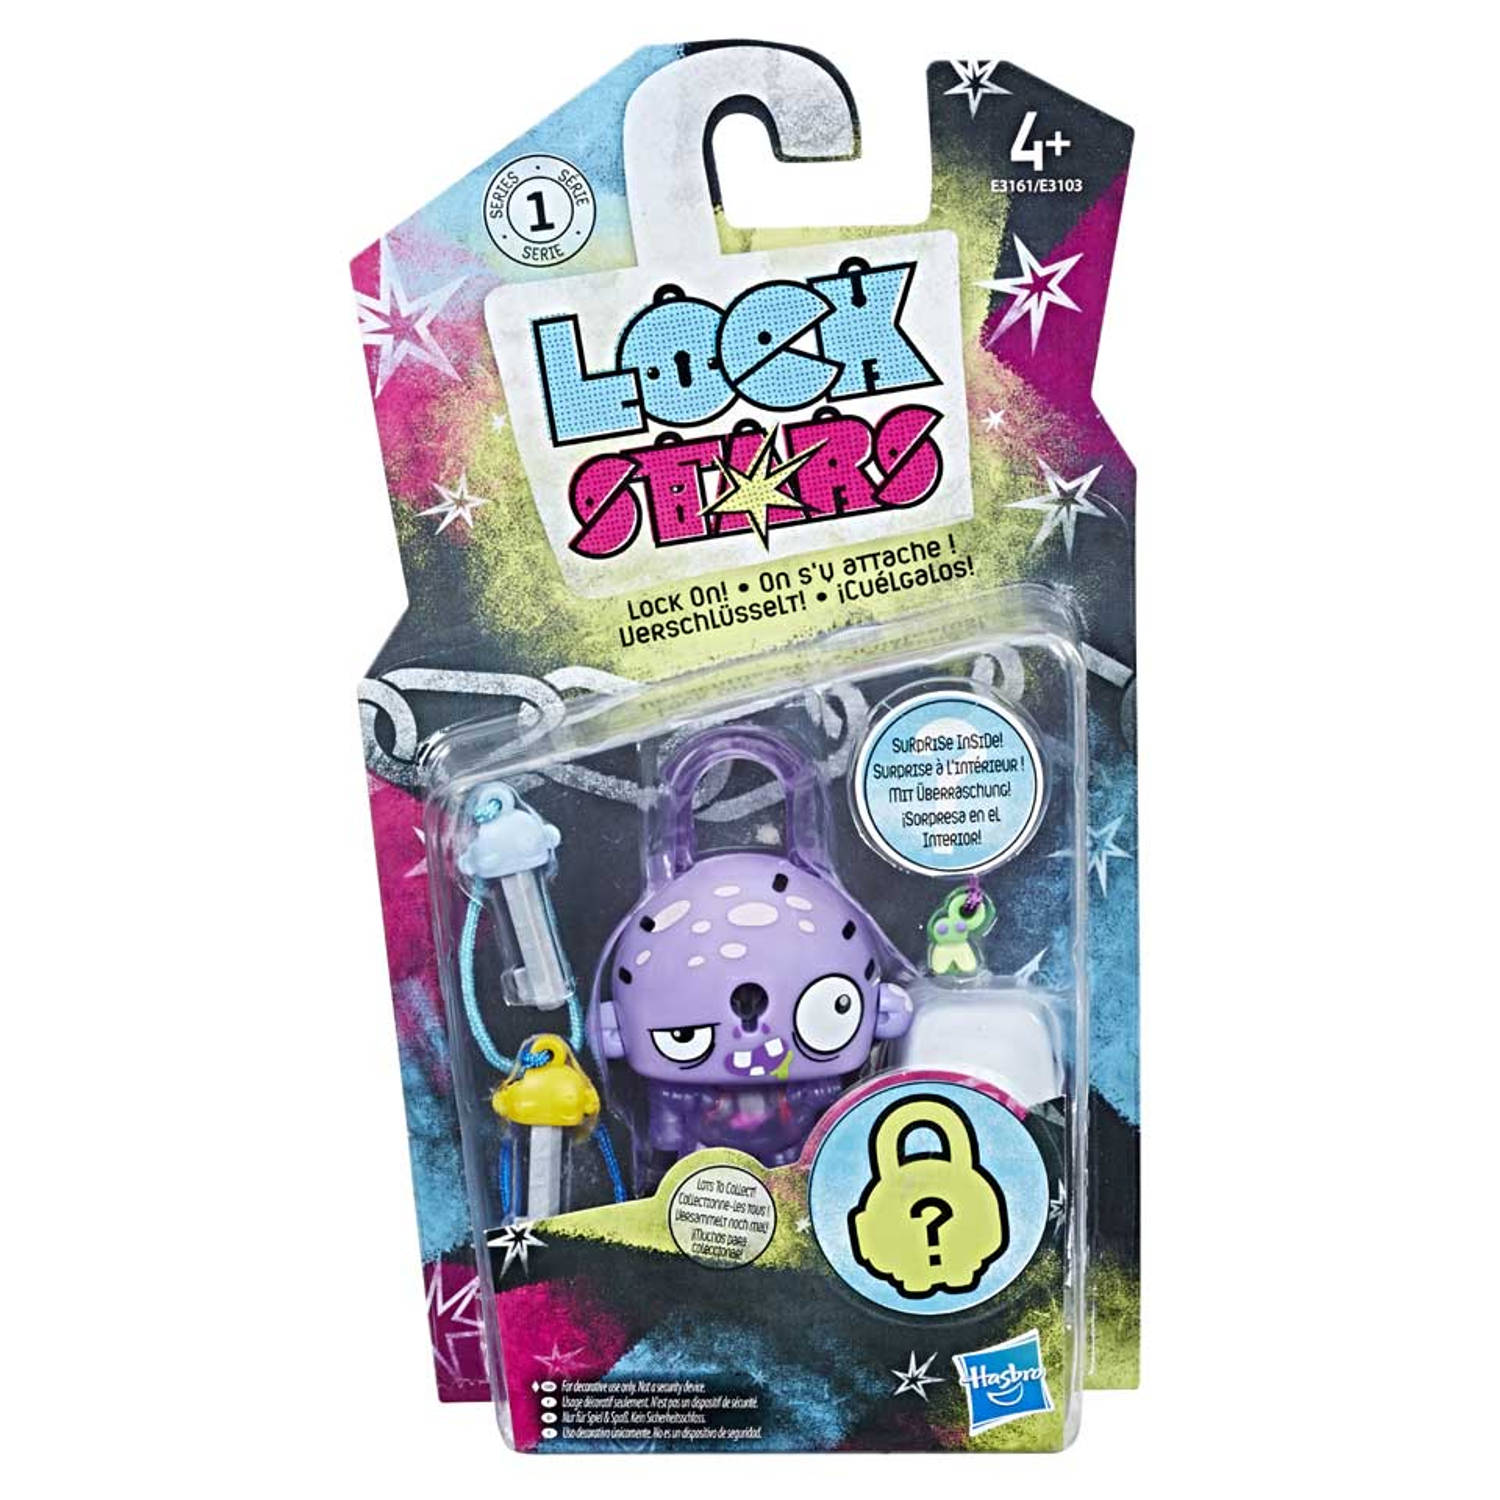 Hasbro Lock stars